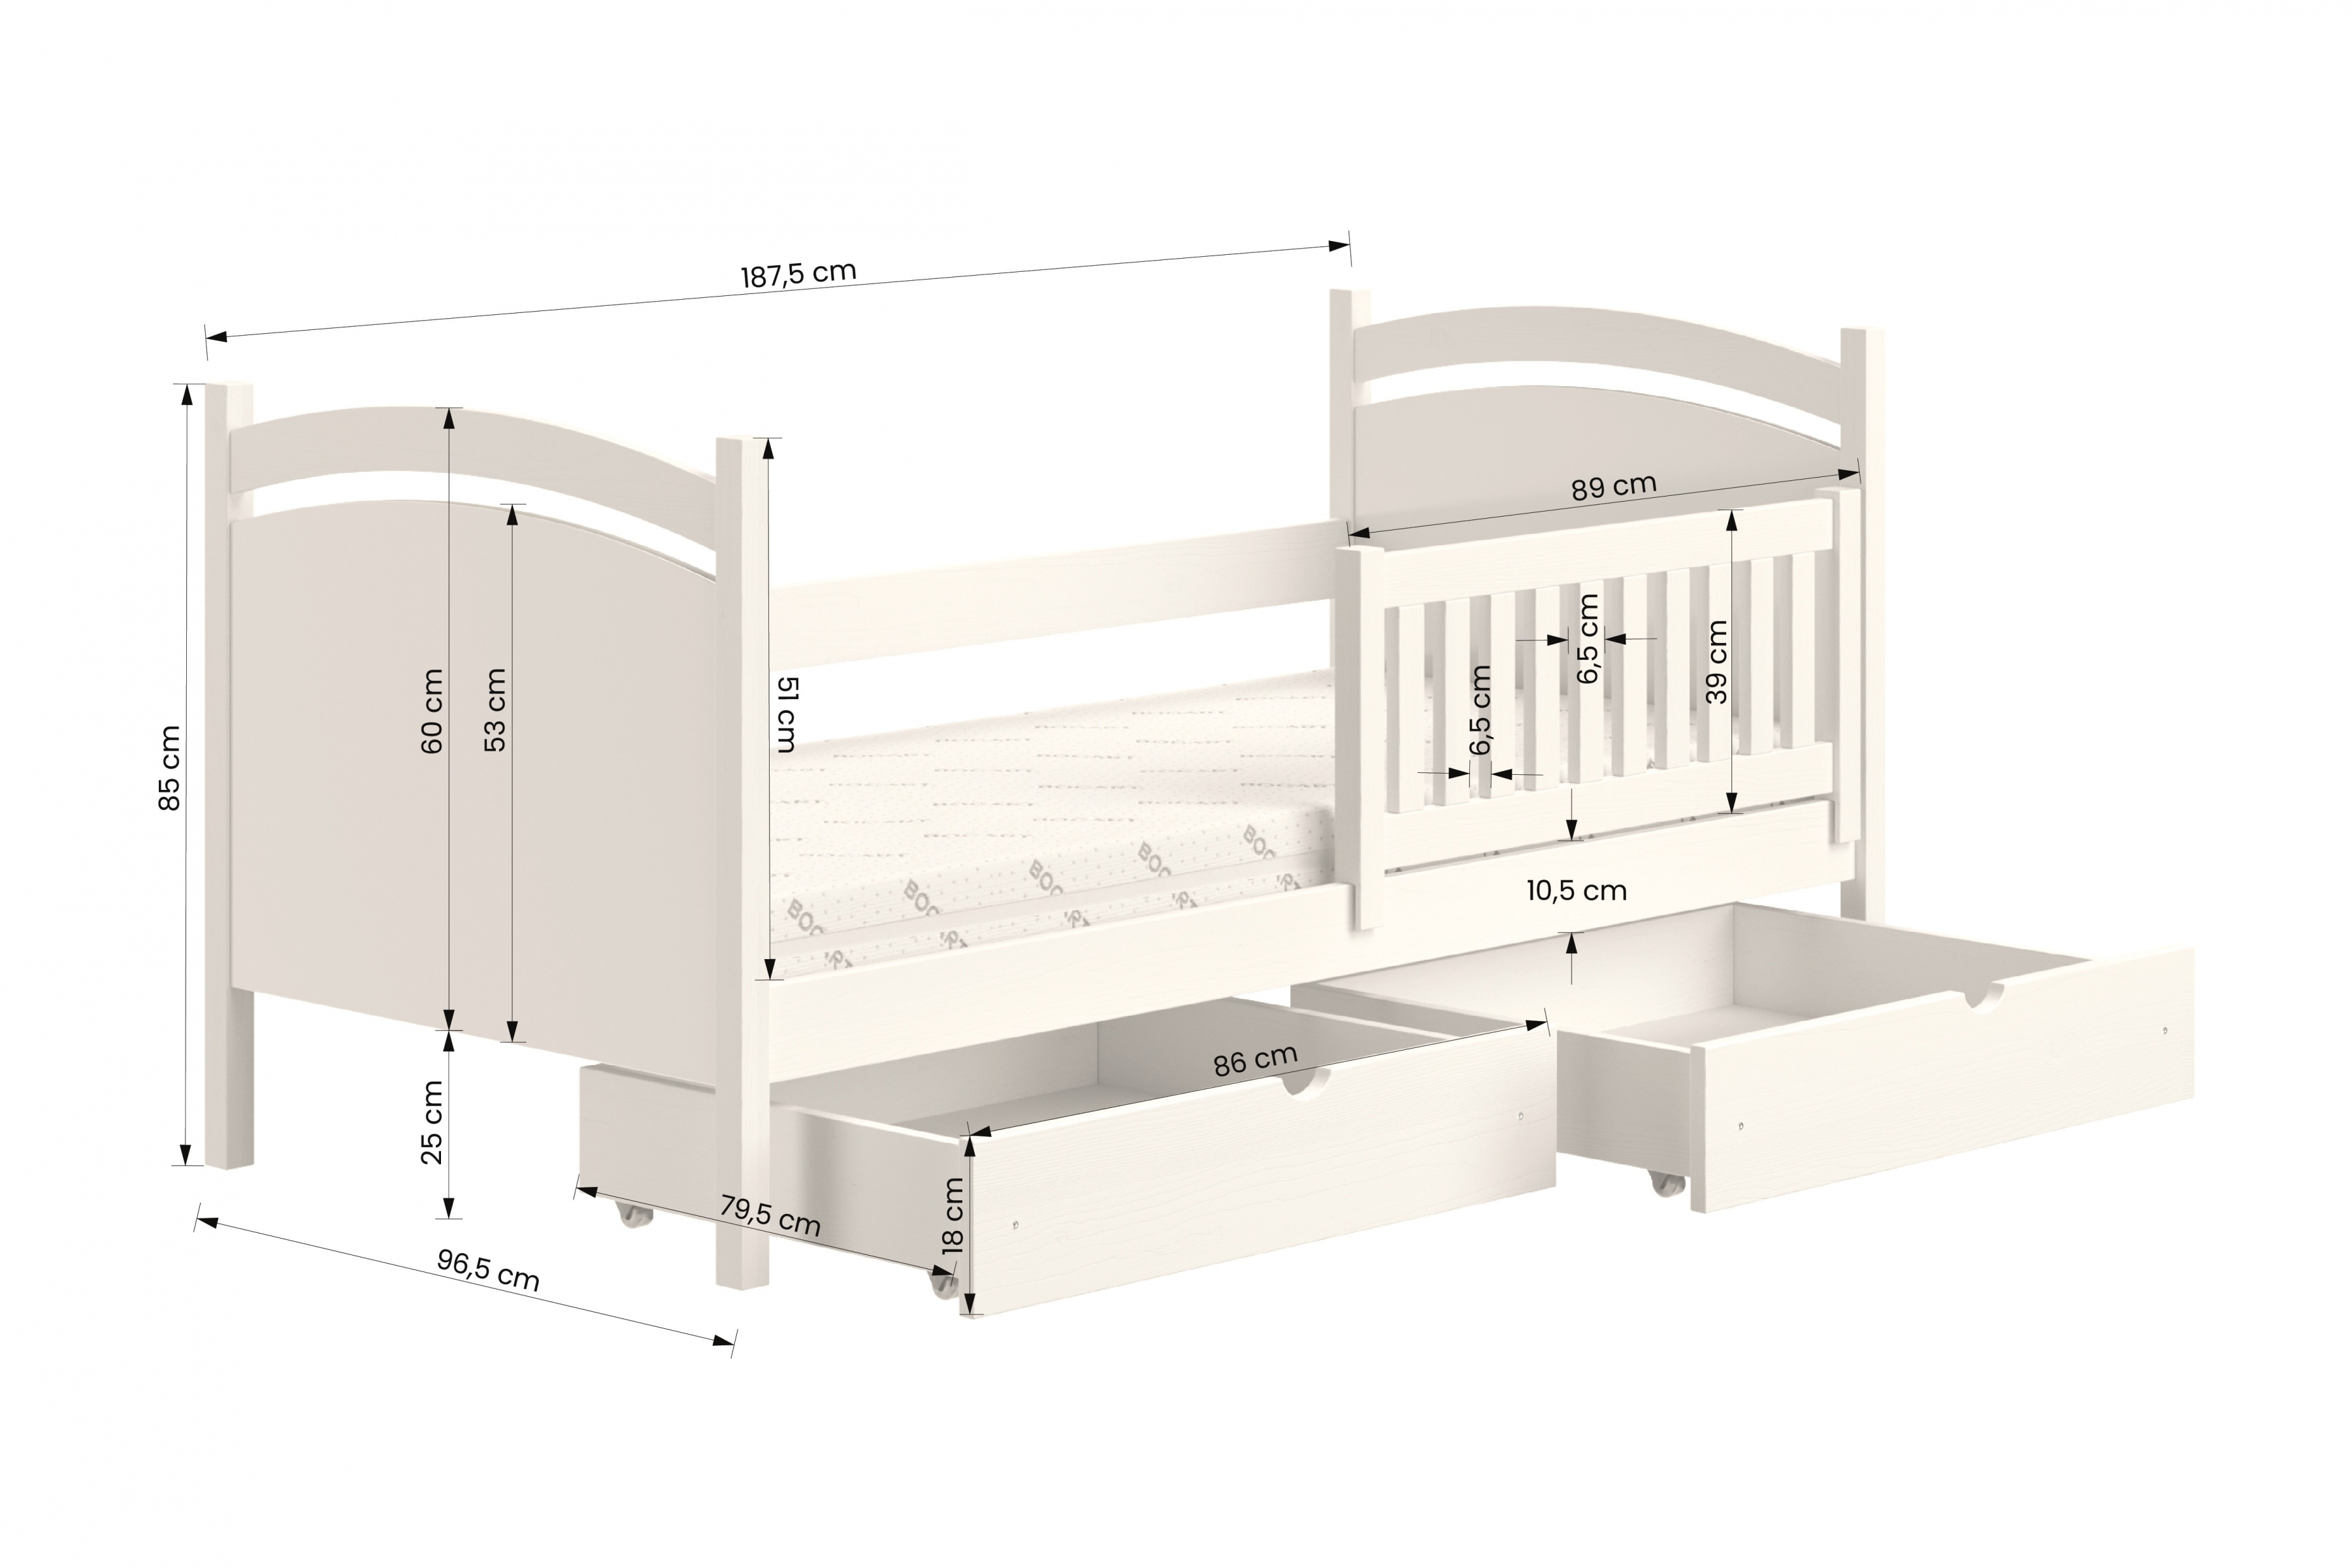 postel dětské s tabulí na suché mazání Amely - Barva Bílý, rozměr 90x180  postel dzieciece z tablica suchoscieralna Amely - Rozměry